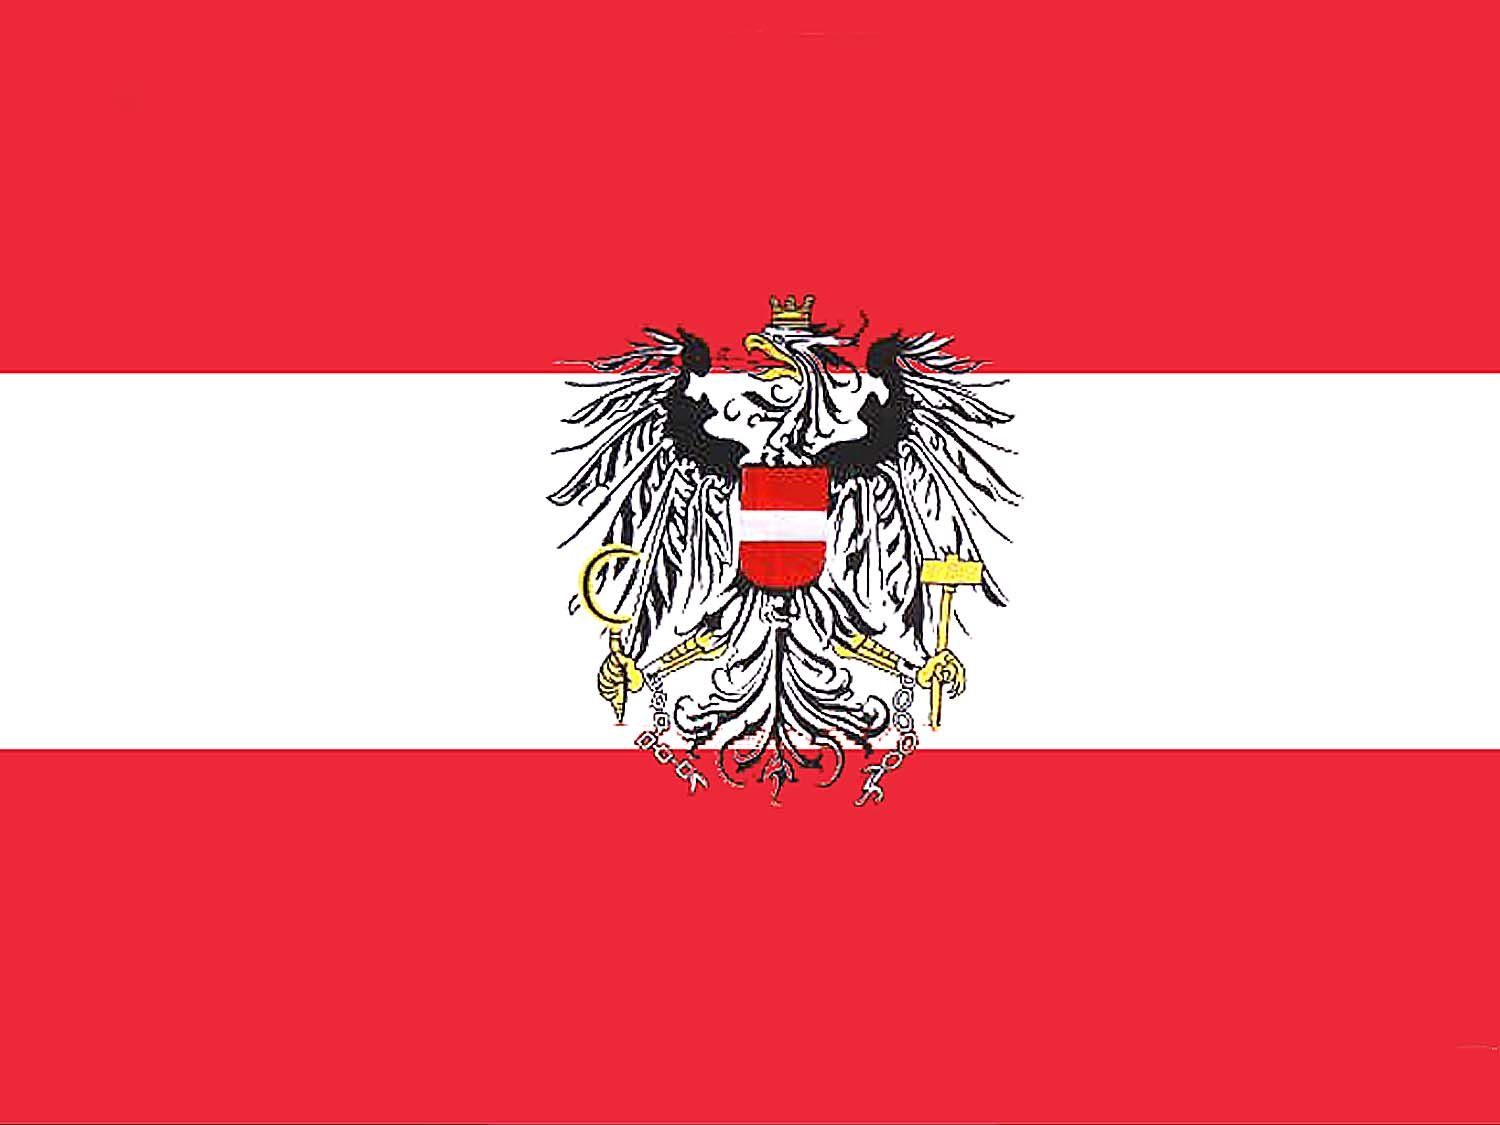 Deutschlandflagge - Deutschlandfahne - ca. 90 x 150 cm - im Polybeute, 4,99  €